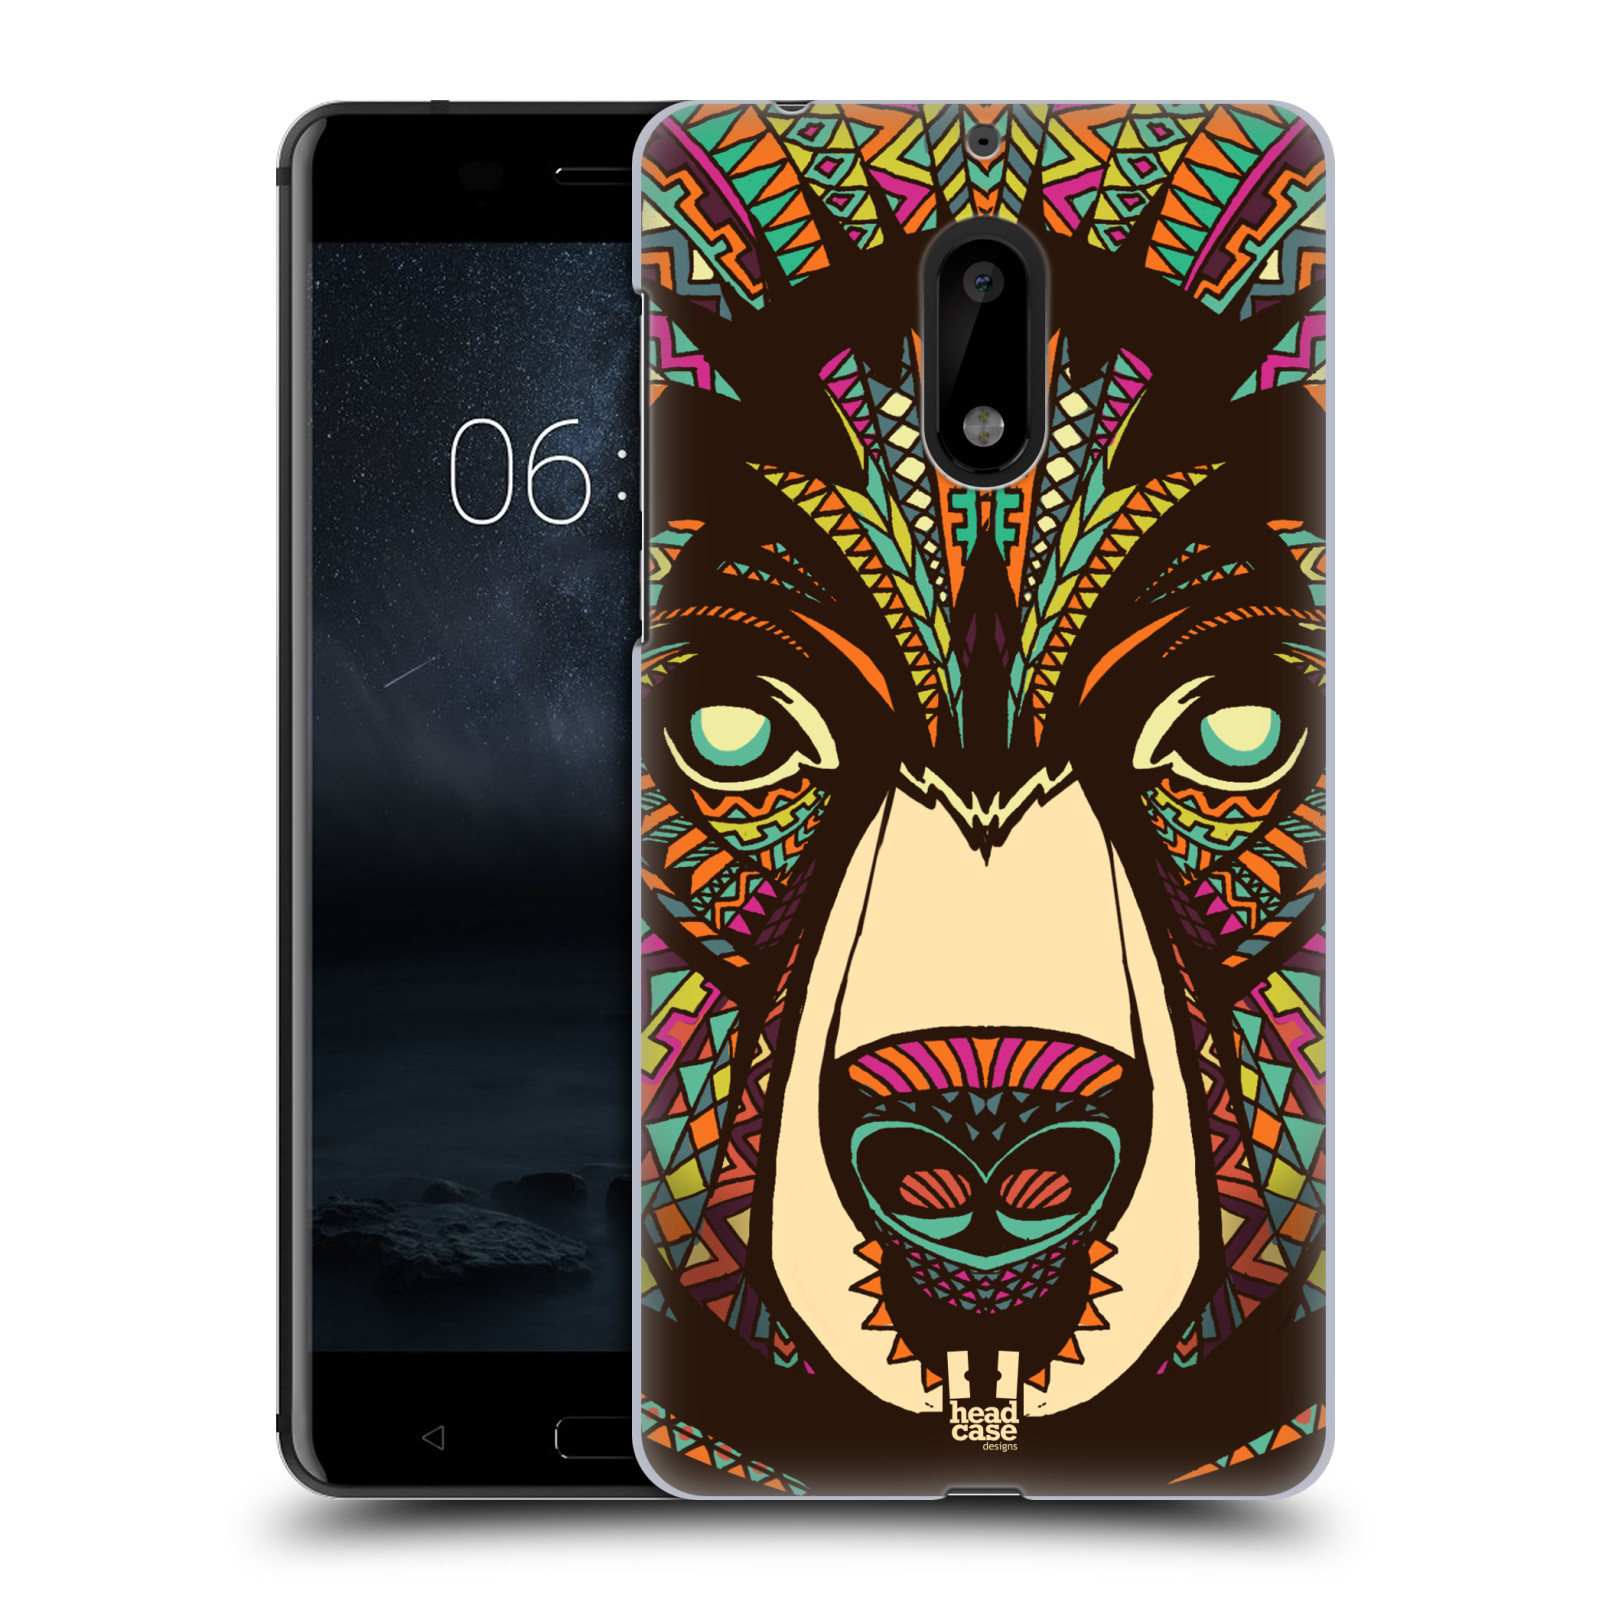 HEAD CASE plastový obal na mobil Nokia 6 vzor Aztécký motiv zvíře medvěd